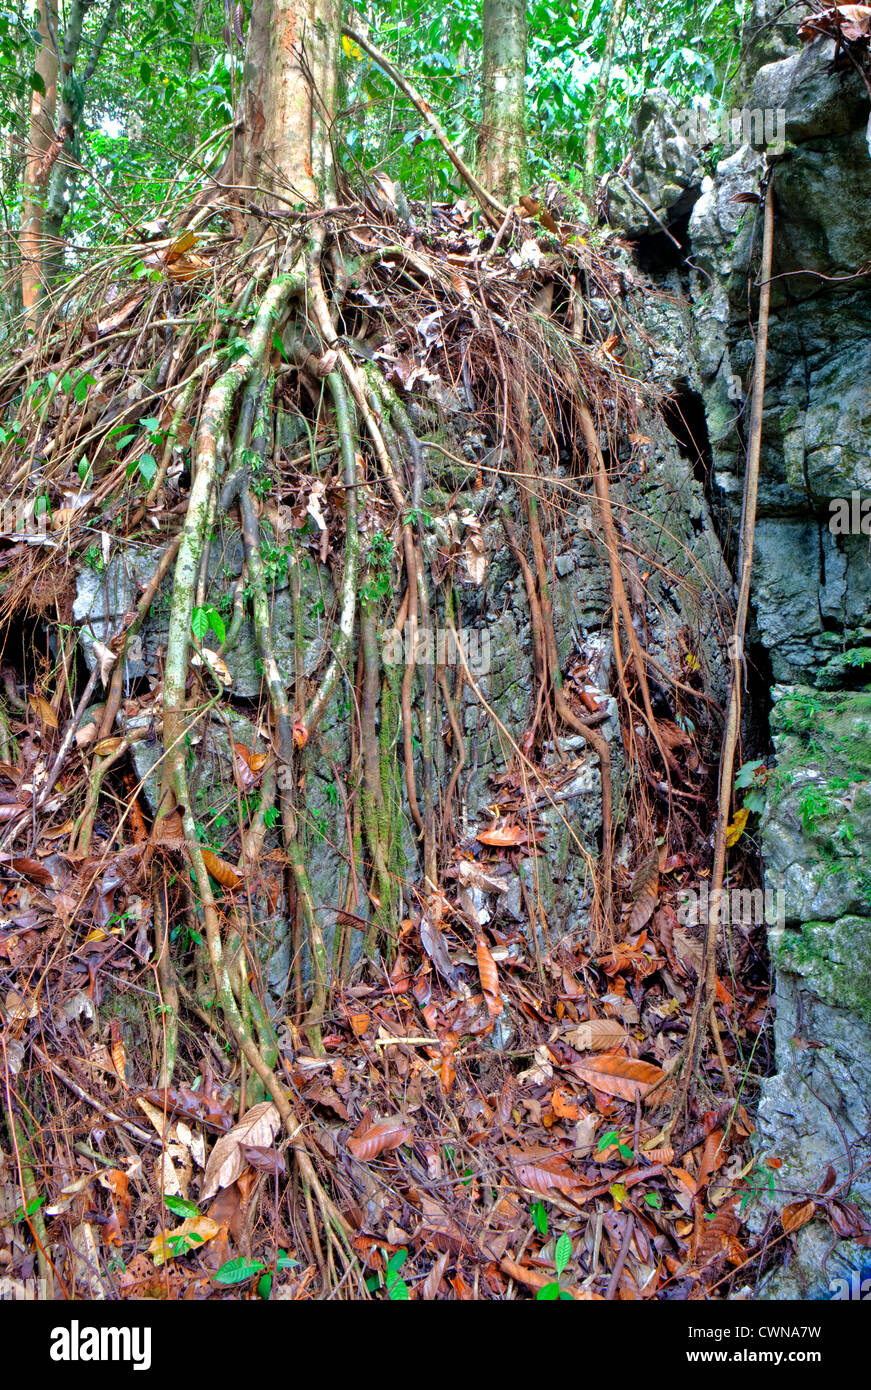 Les racines sur la roche, Gulung Mulu National Park, Bornéo, Malaisie Banque D'Images